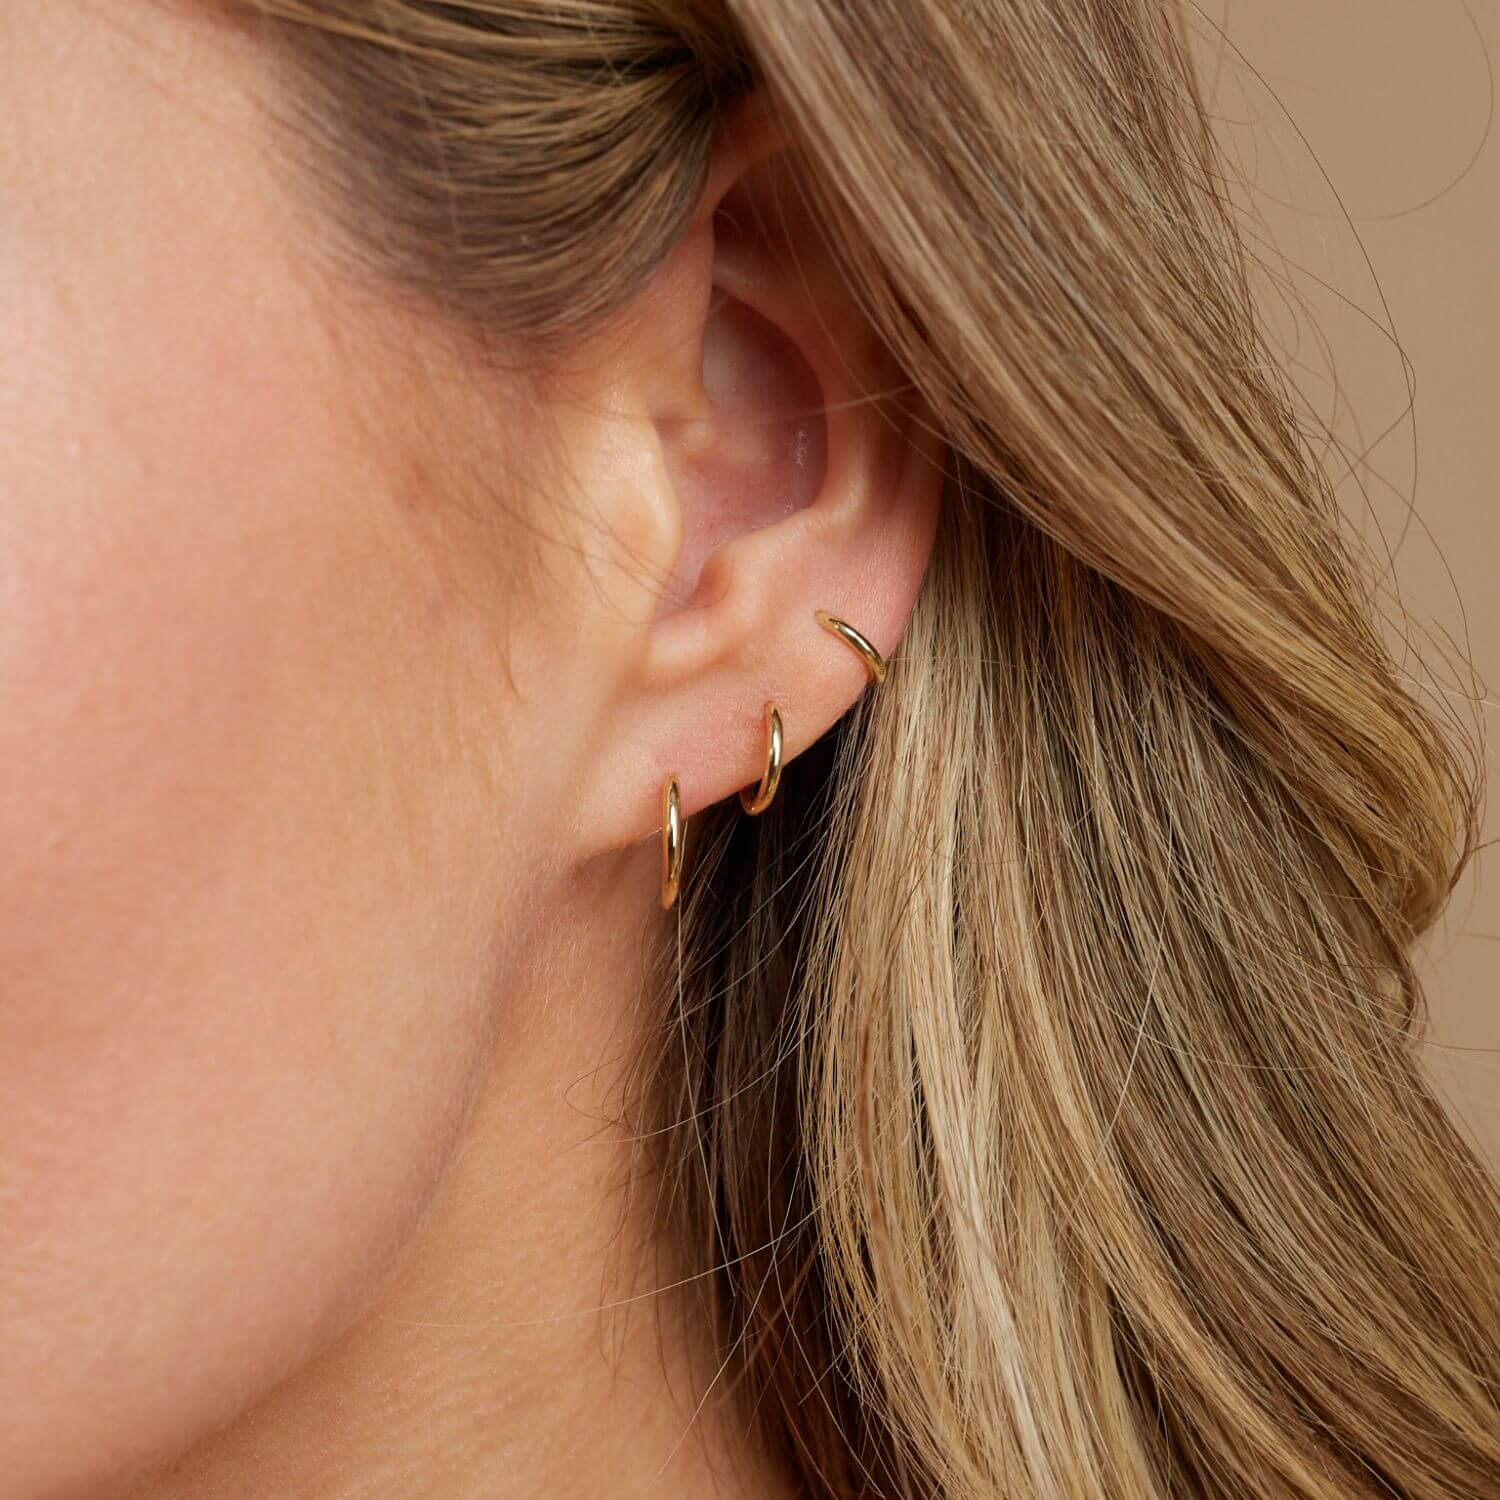 Small gold earrings, yellow gold baby earrings, earrings for newborn